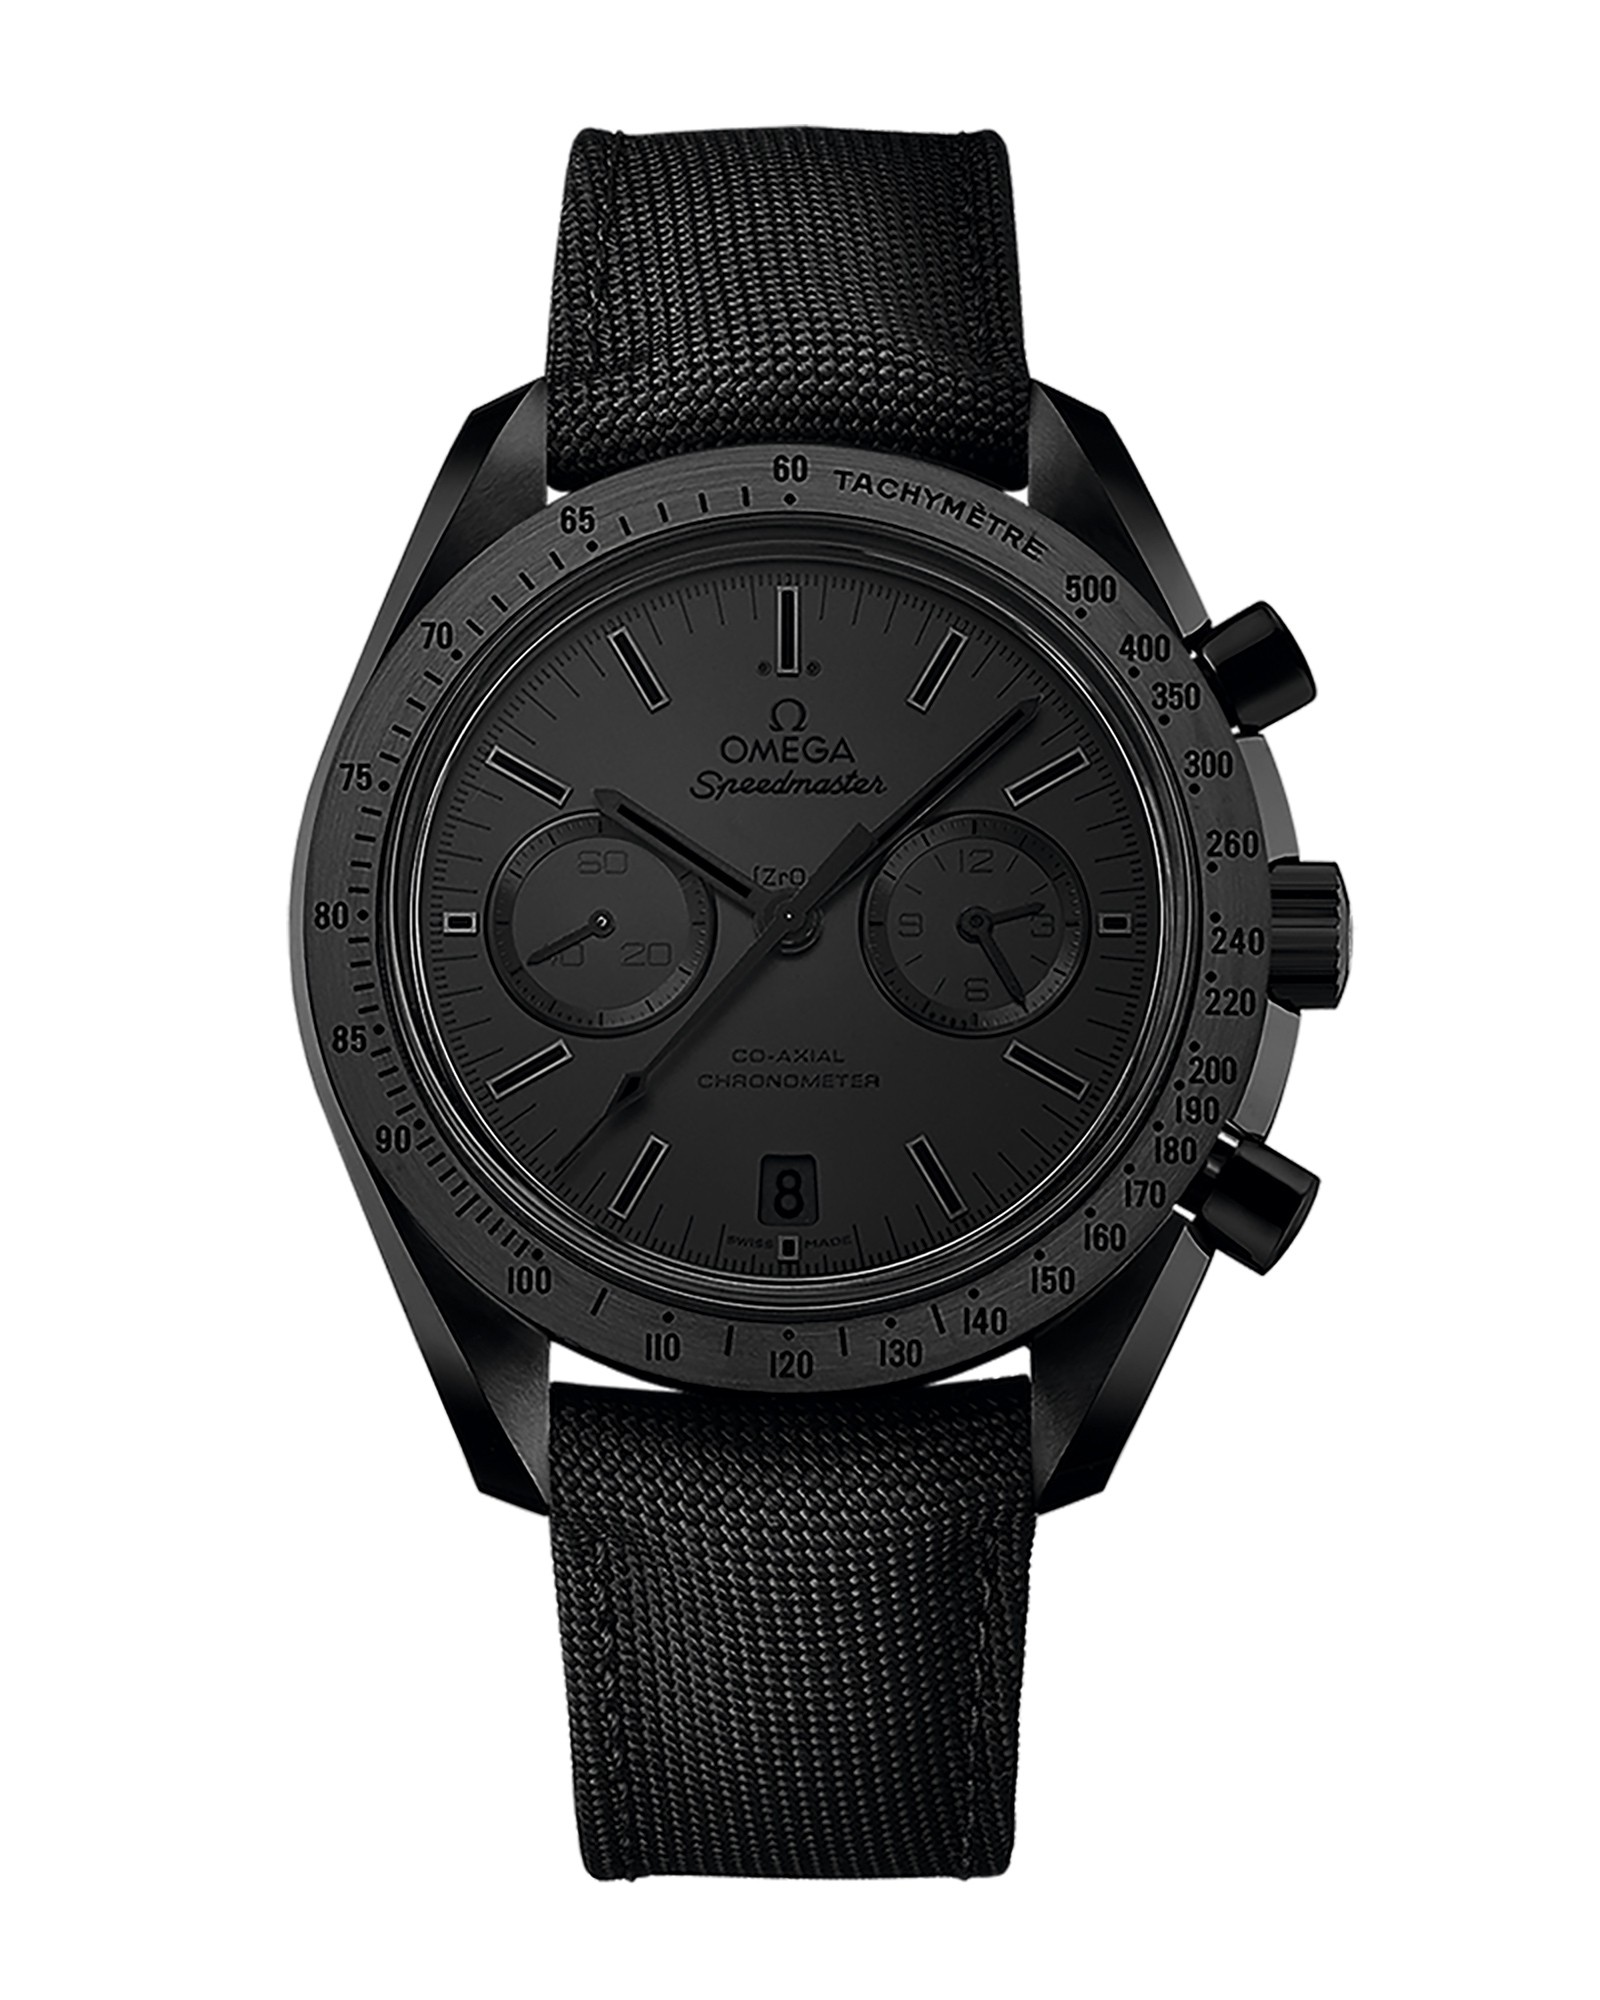 大人のオールブラック・黒時計4選。おしゃれな人気モデルあつめました